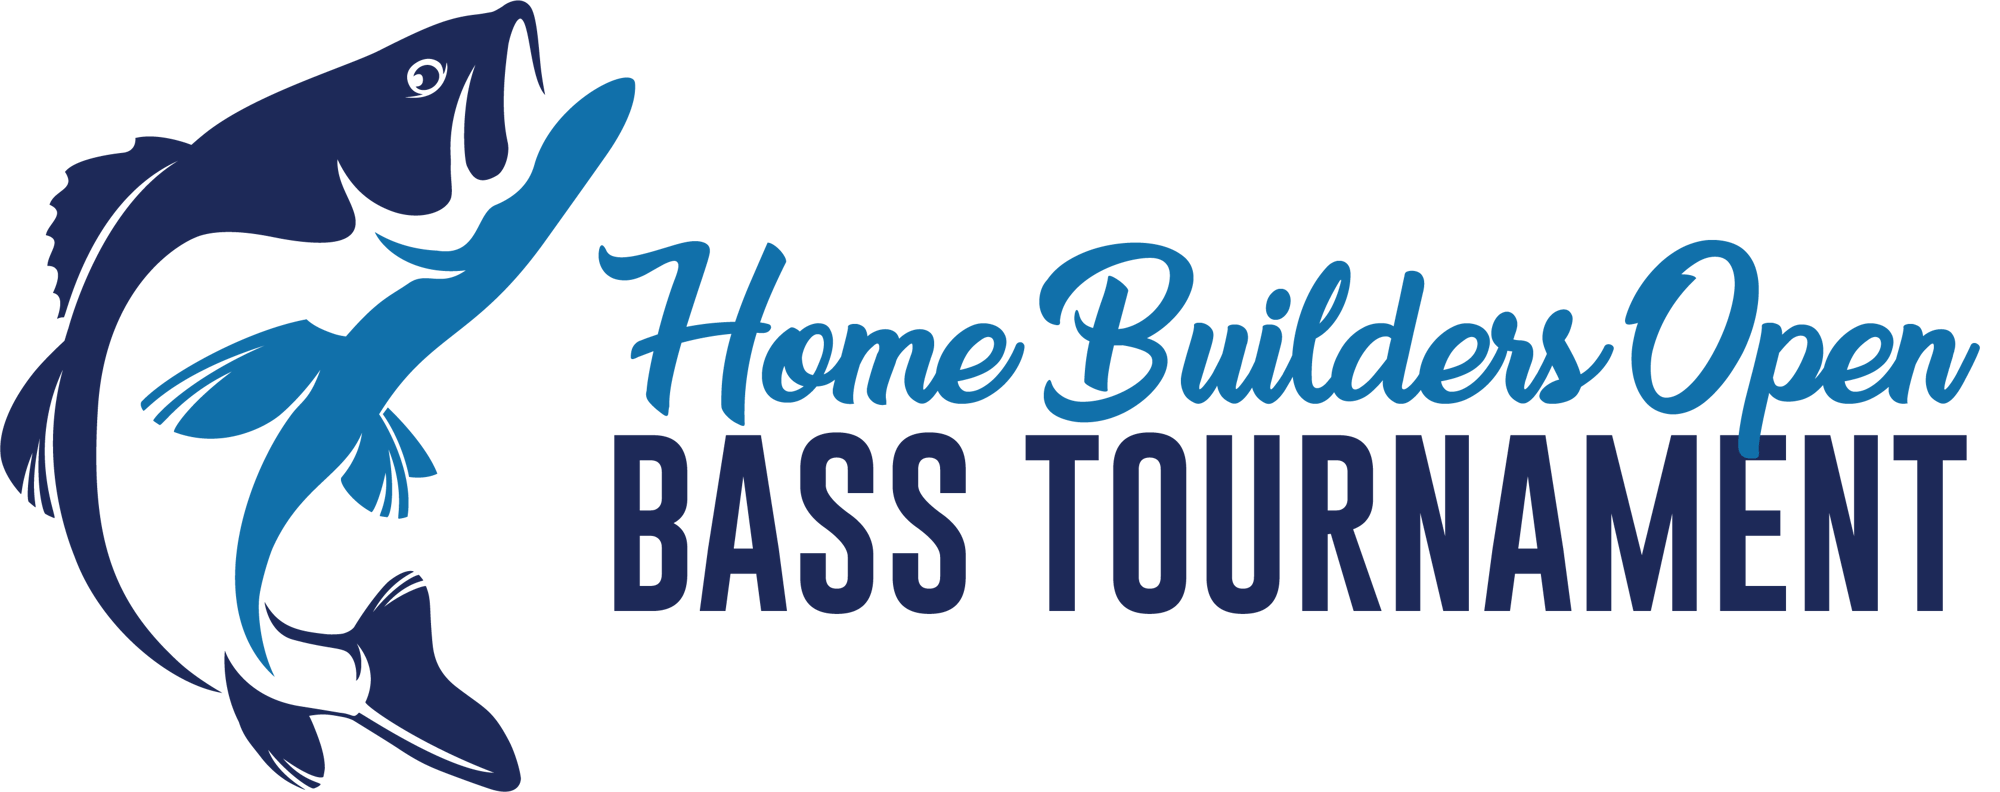 Home Builders Open Bass Tournament